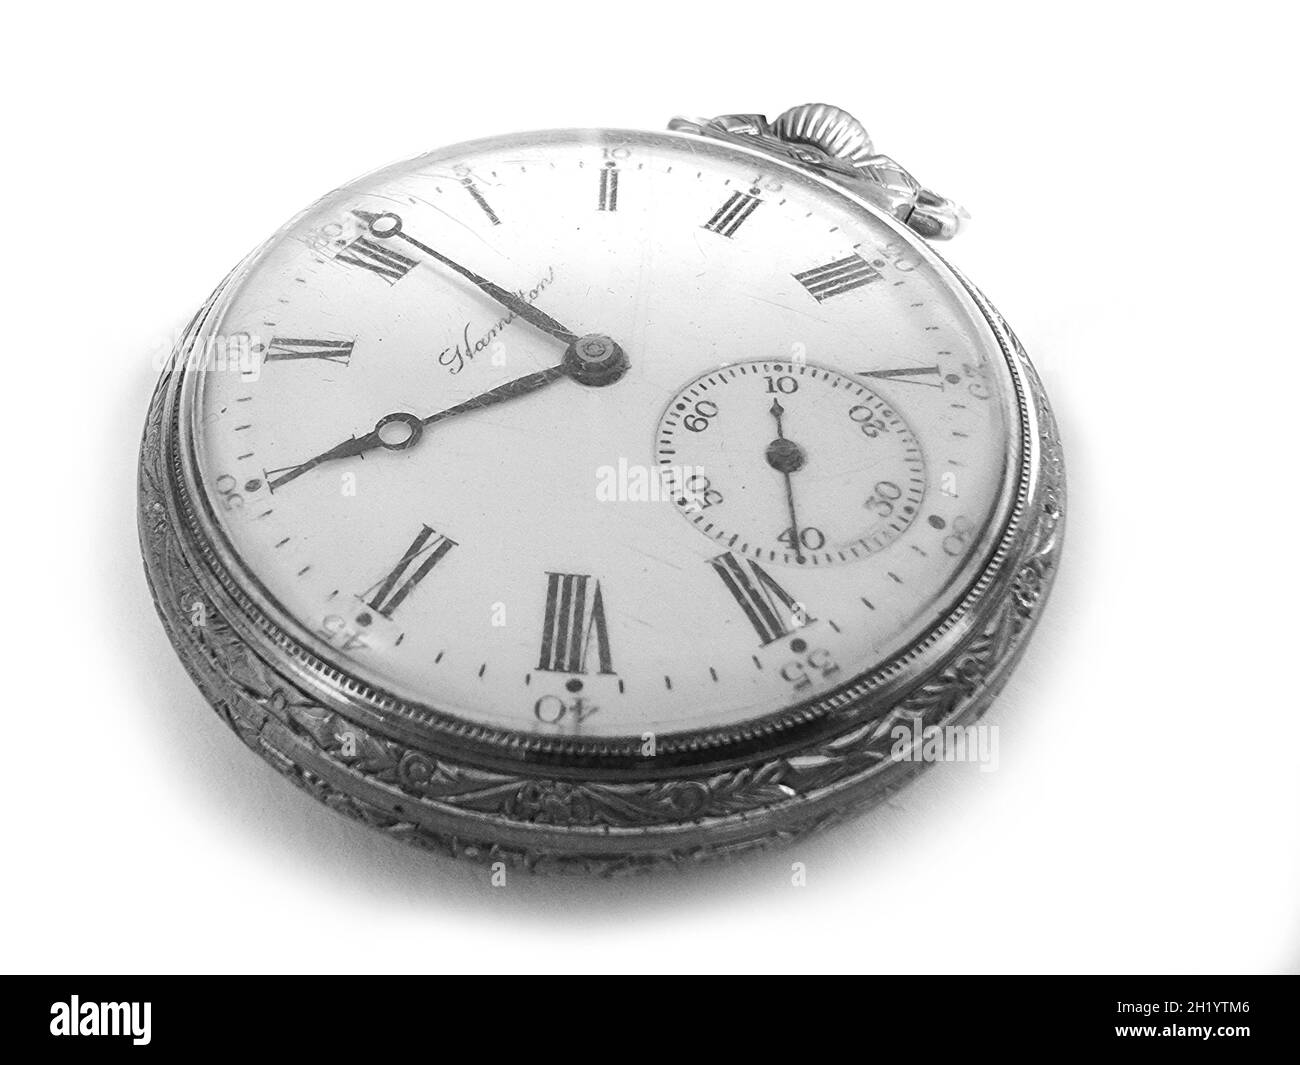 Bangkok, Thaïlande - 19 octobre 2021 : éditorial d'illustration de l'ancienne montre de poche Hamilton de qualité chemin de fer sur fond blanc. Banque D'Images